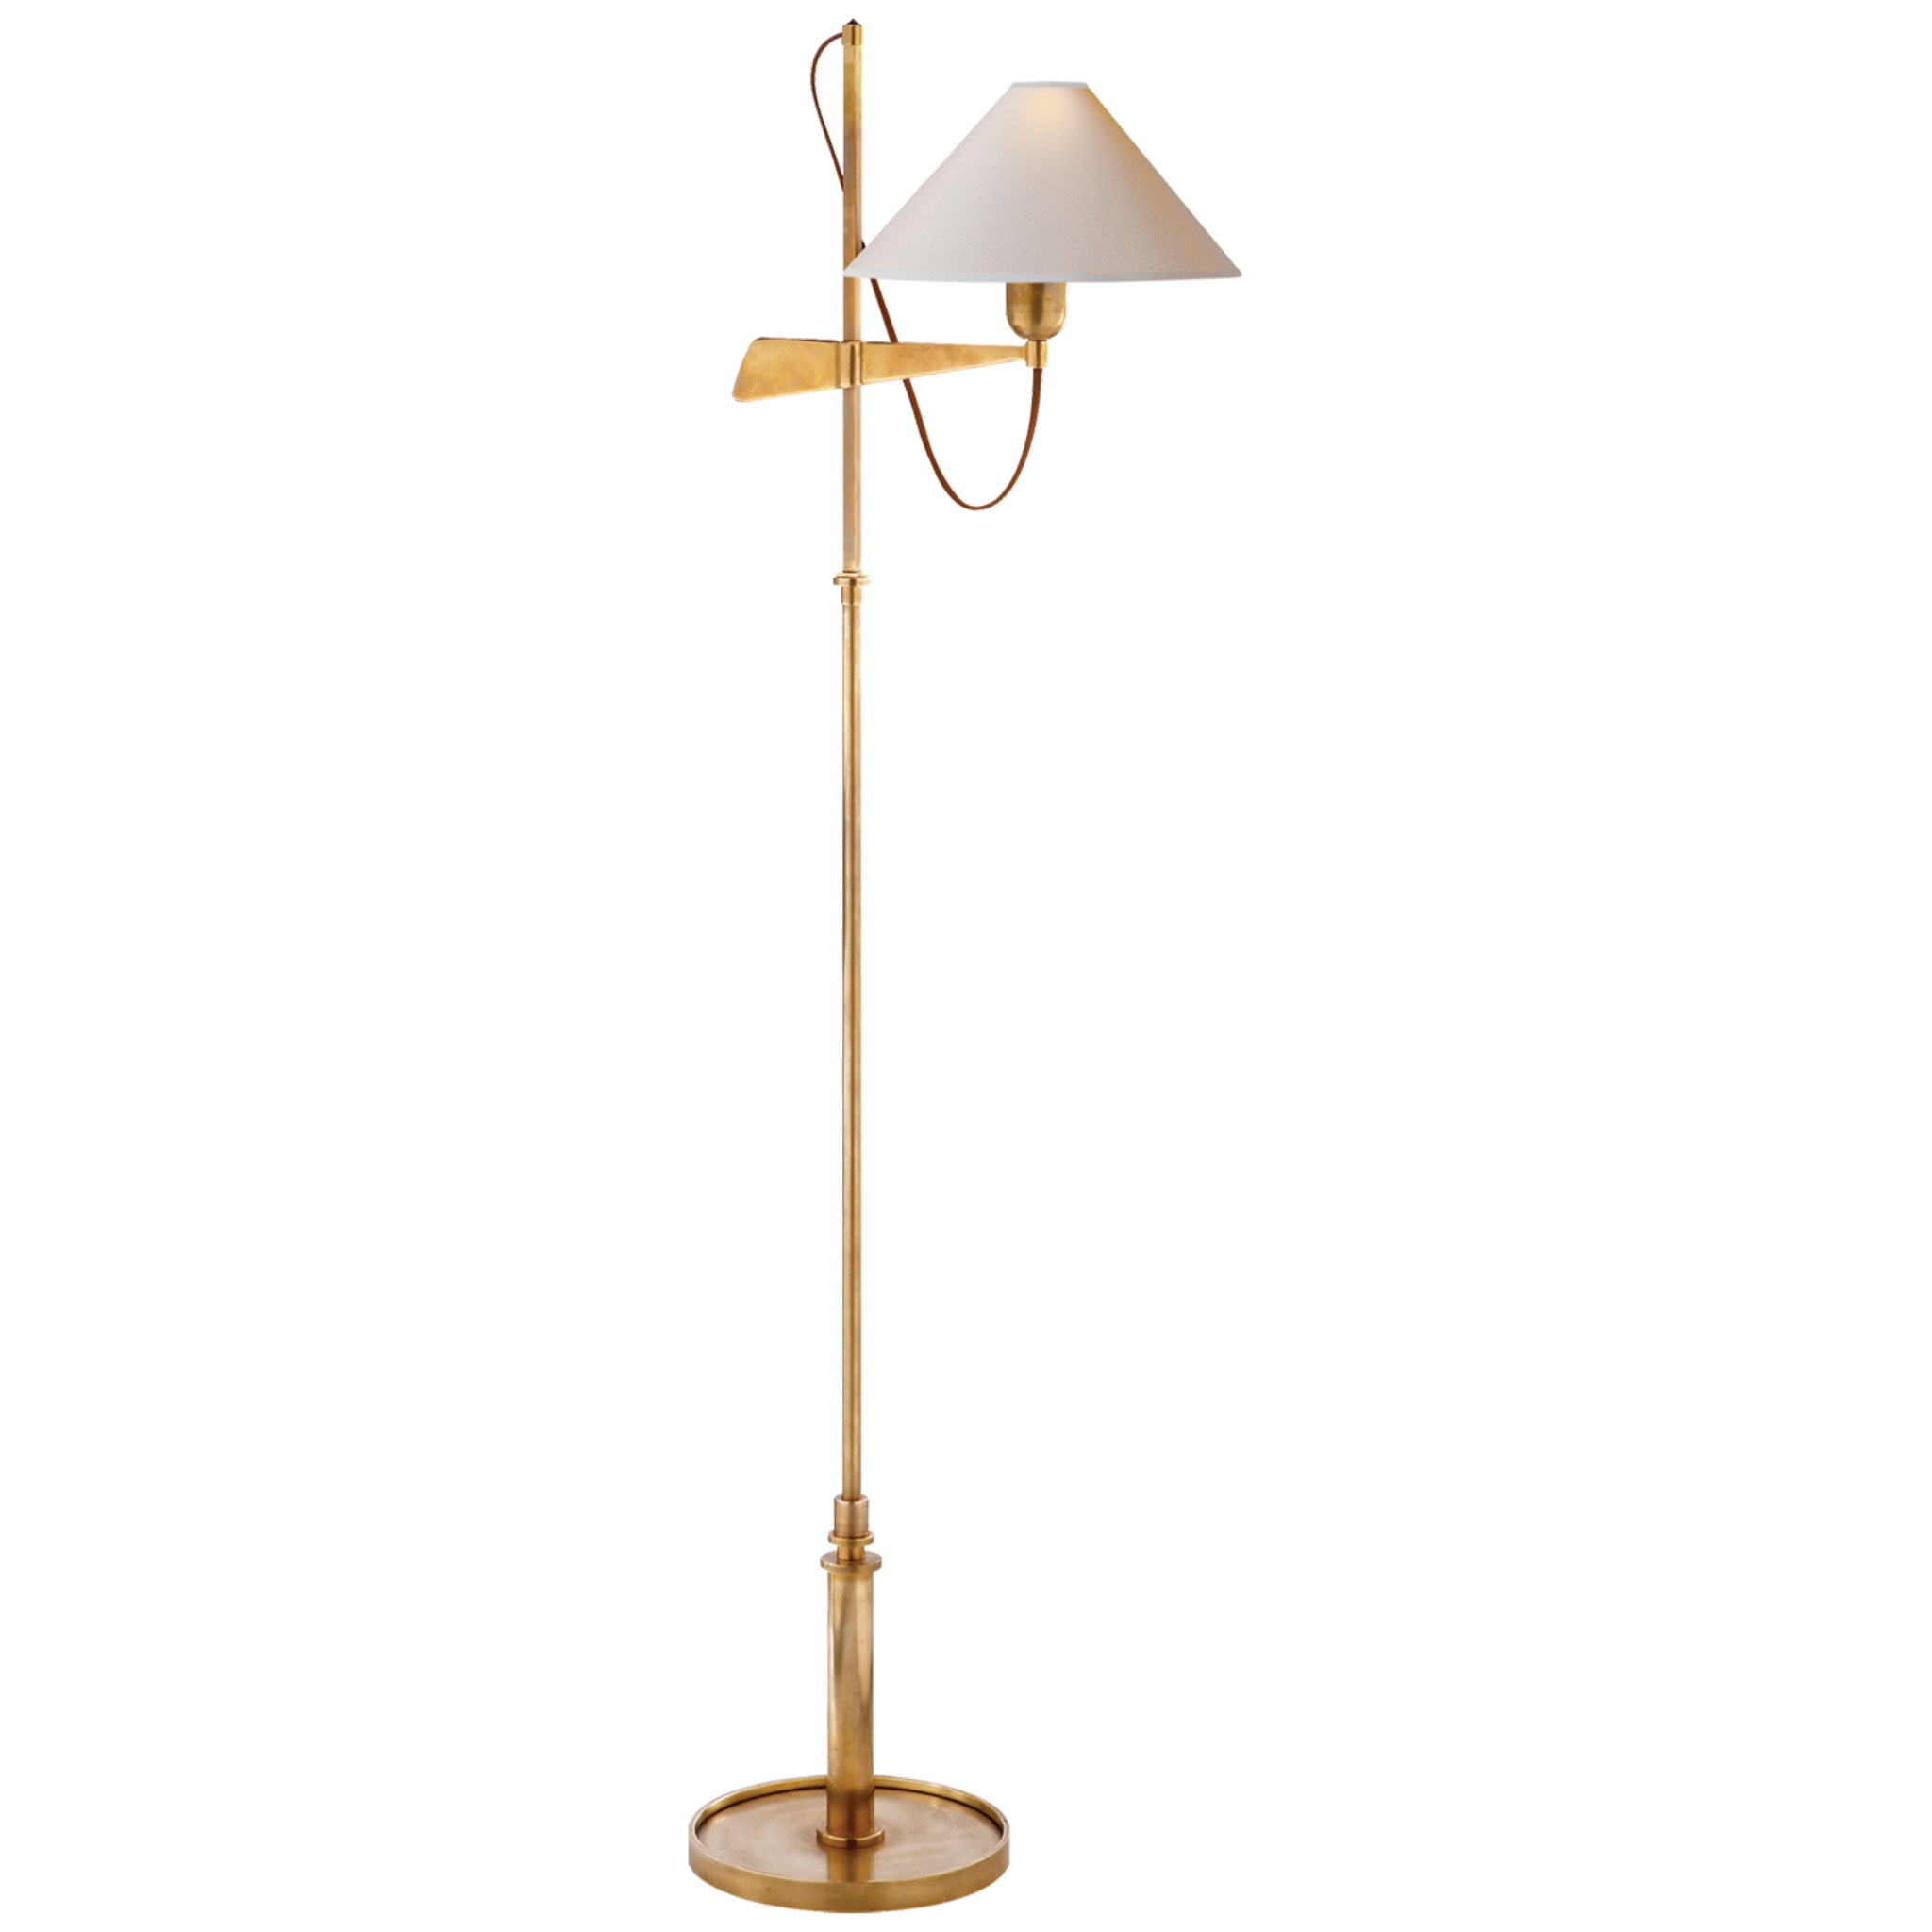 Bridge Arm Floor Lamp in Antique Brass